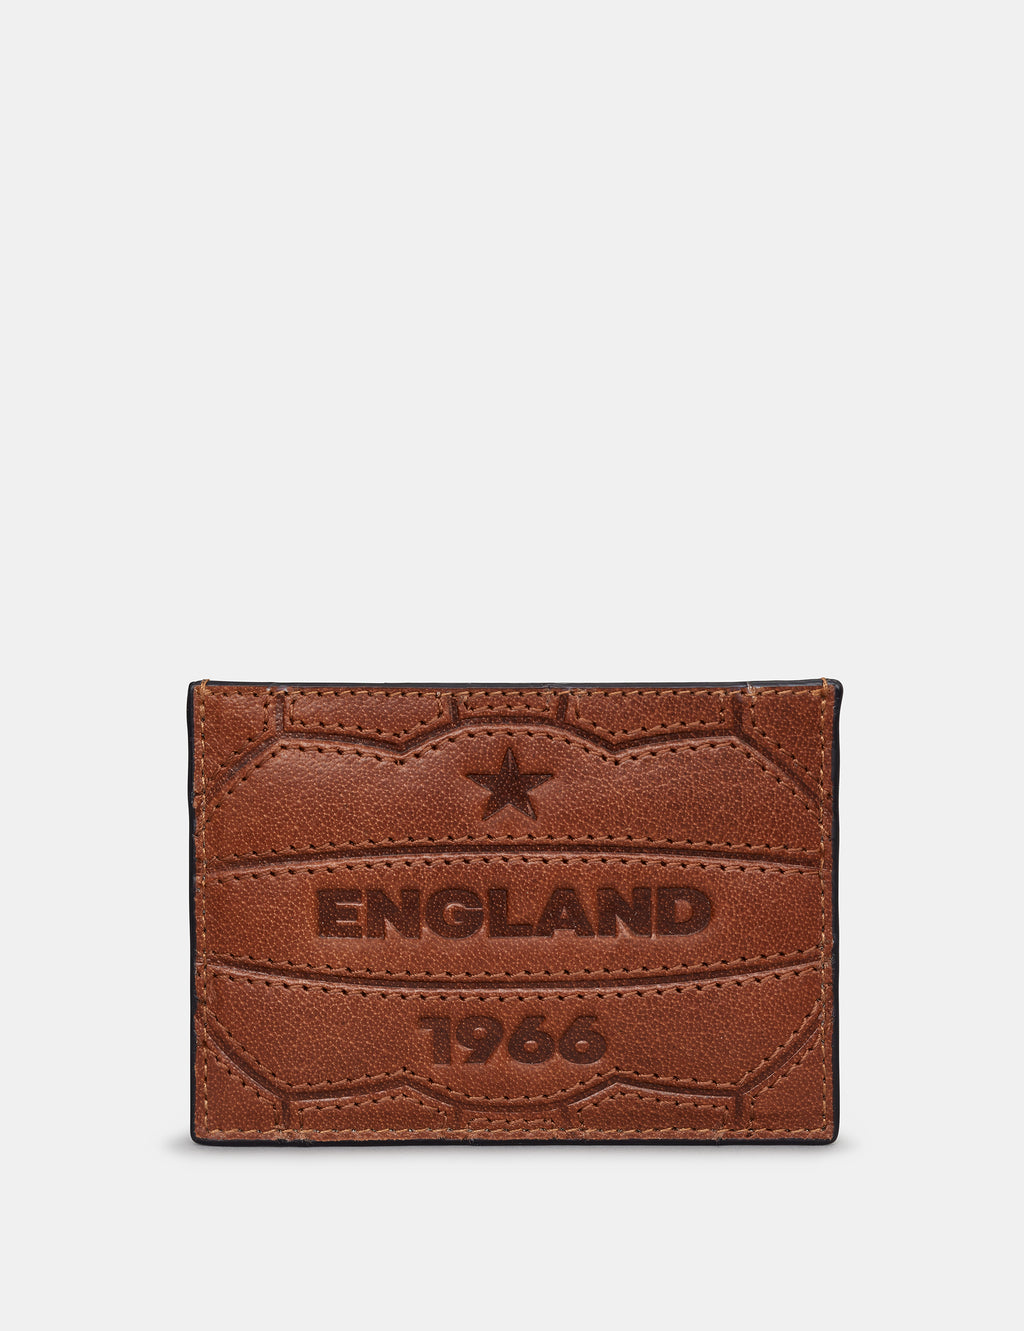 England Legends 1966 Leather Card Holder